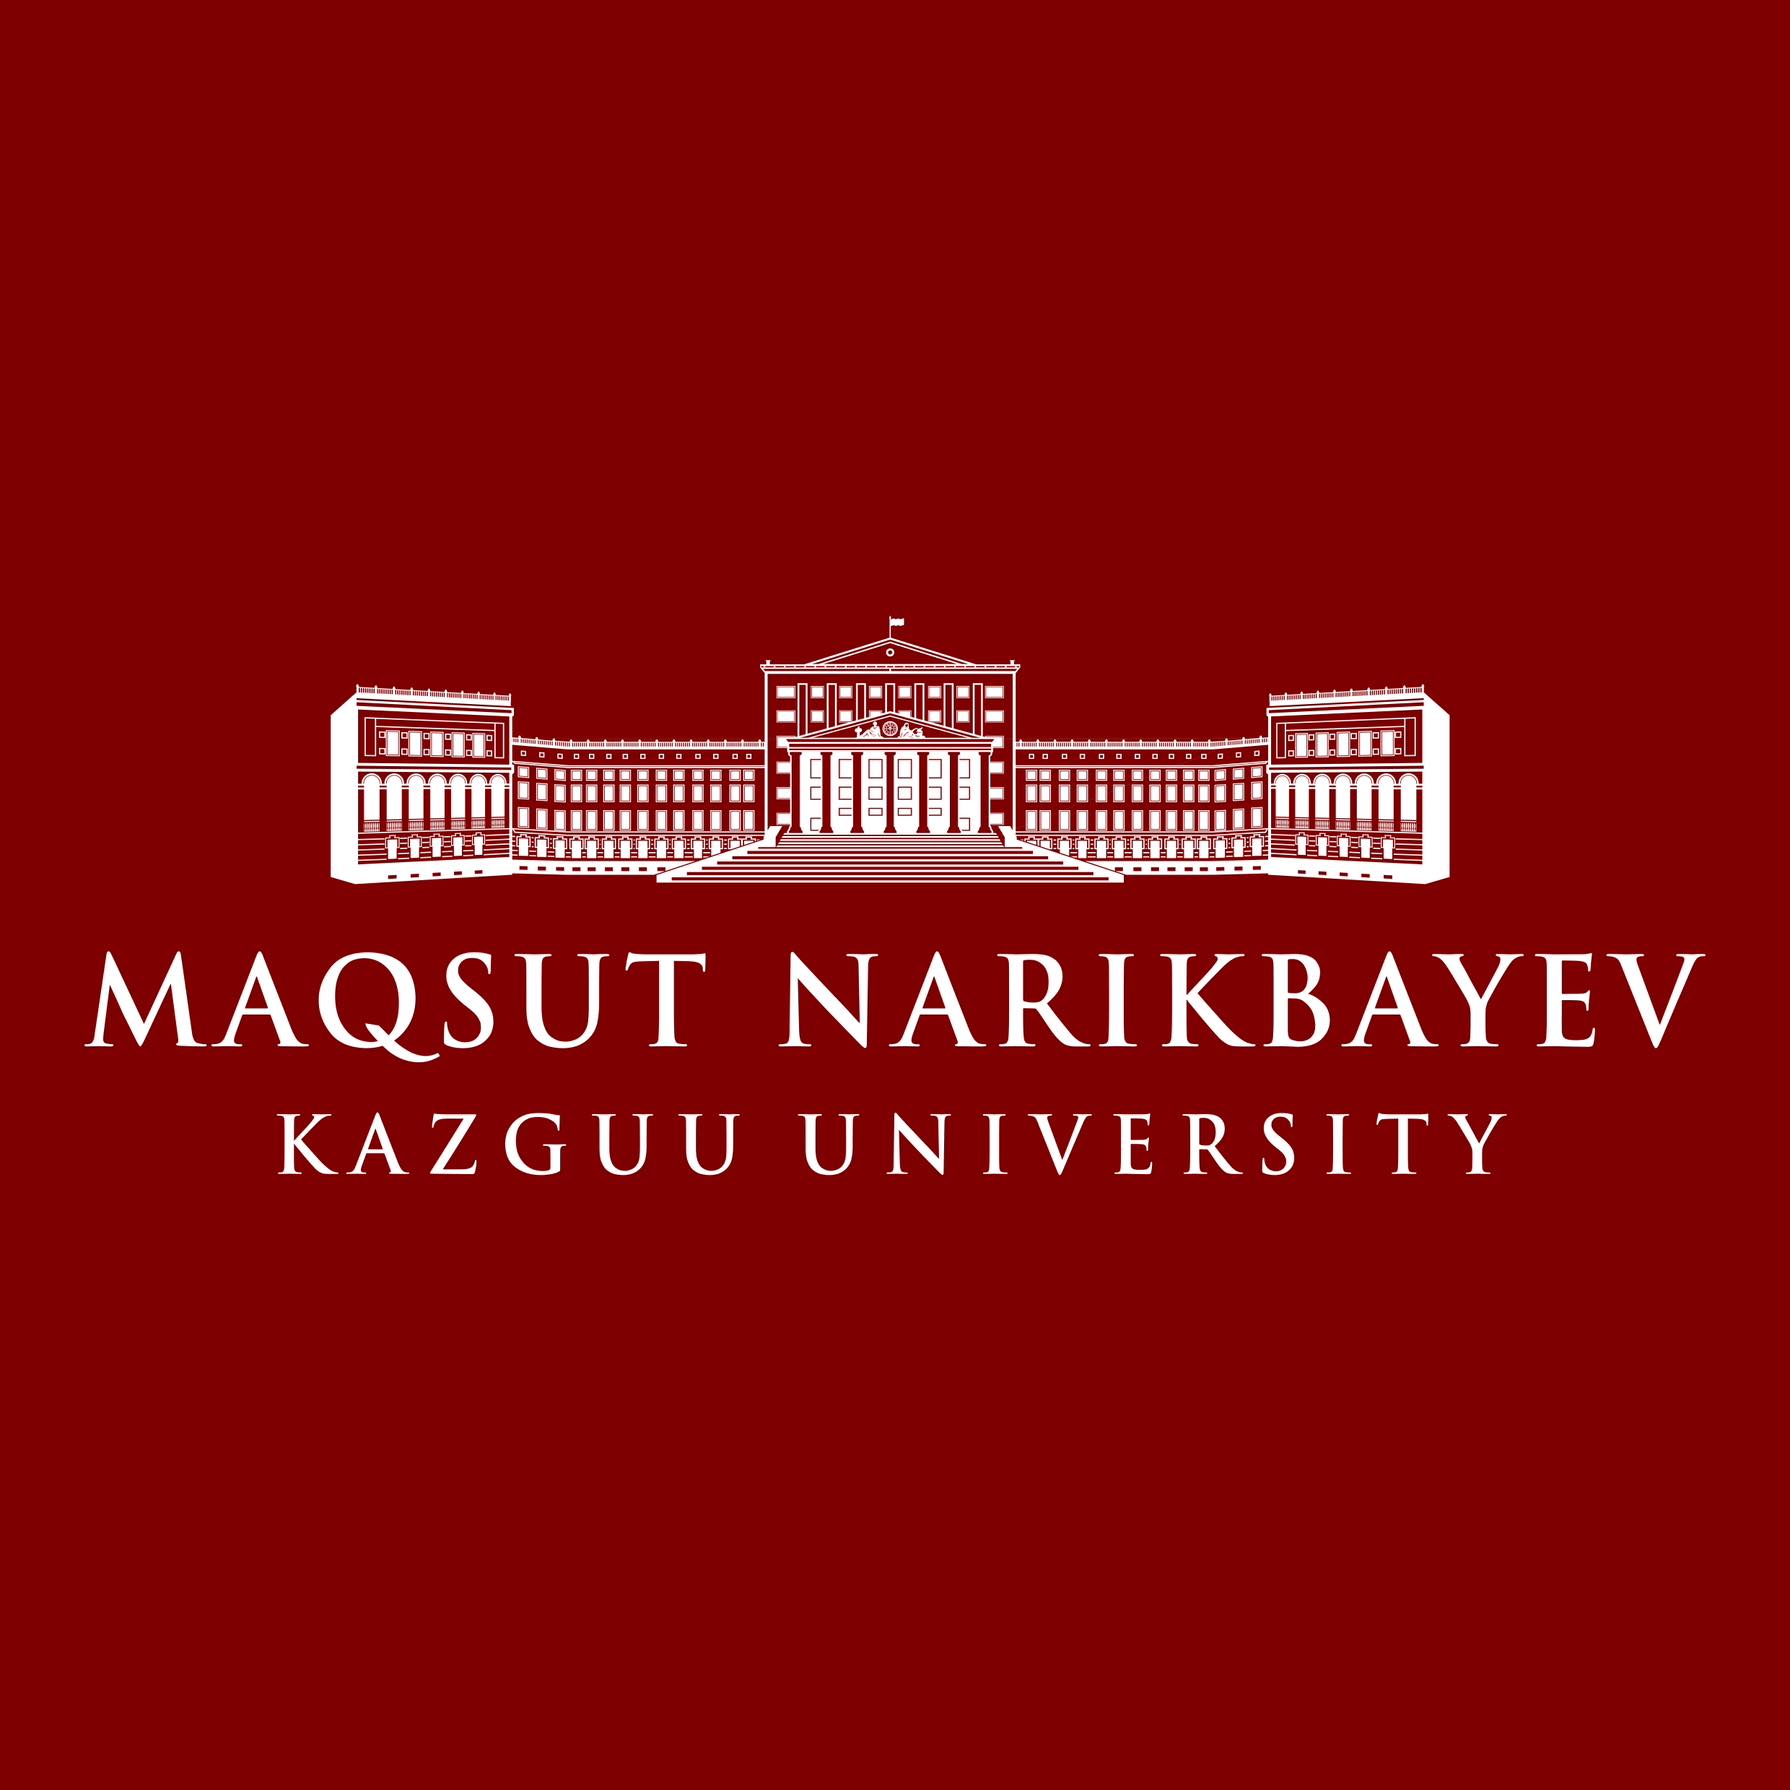 MAQSUT NARIKBAYEV KAZGUU UNIVERSITY